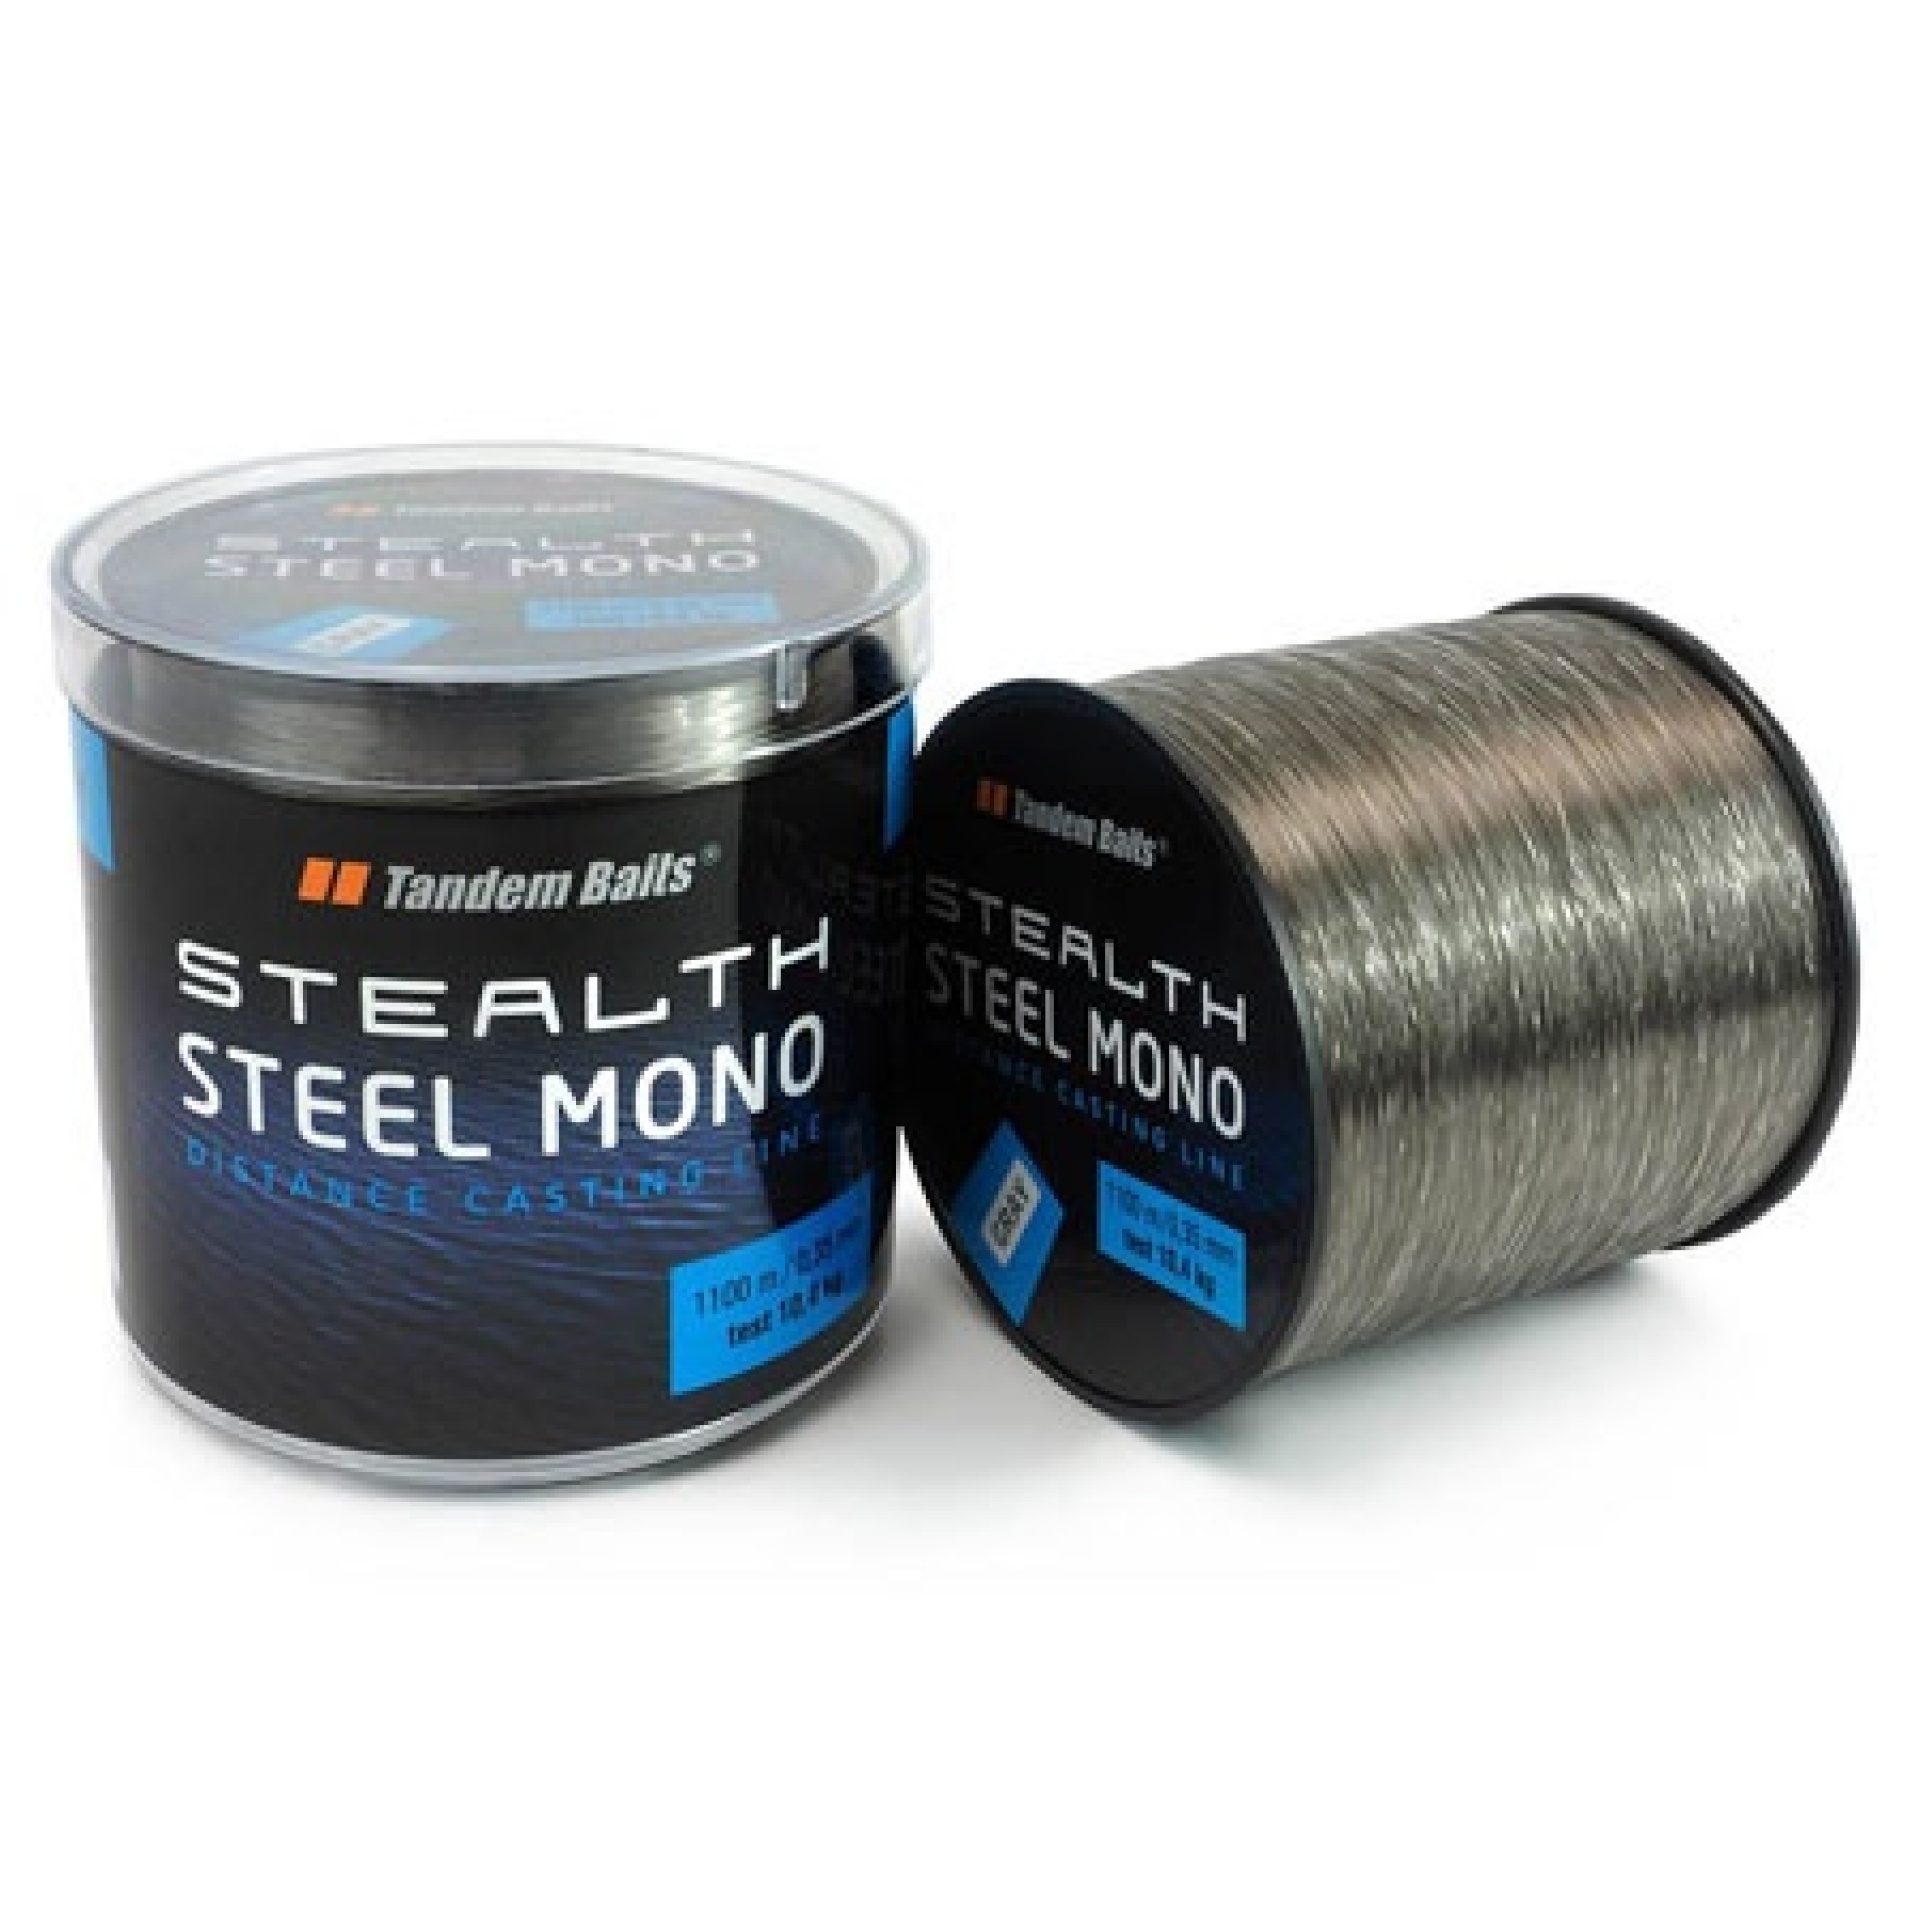 Tandem Baits Stealth Steel Mono - Zsinór